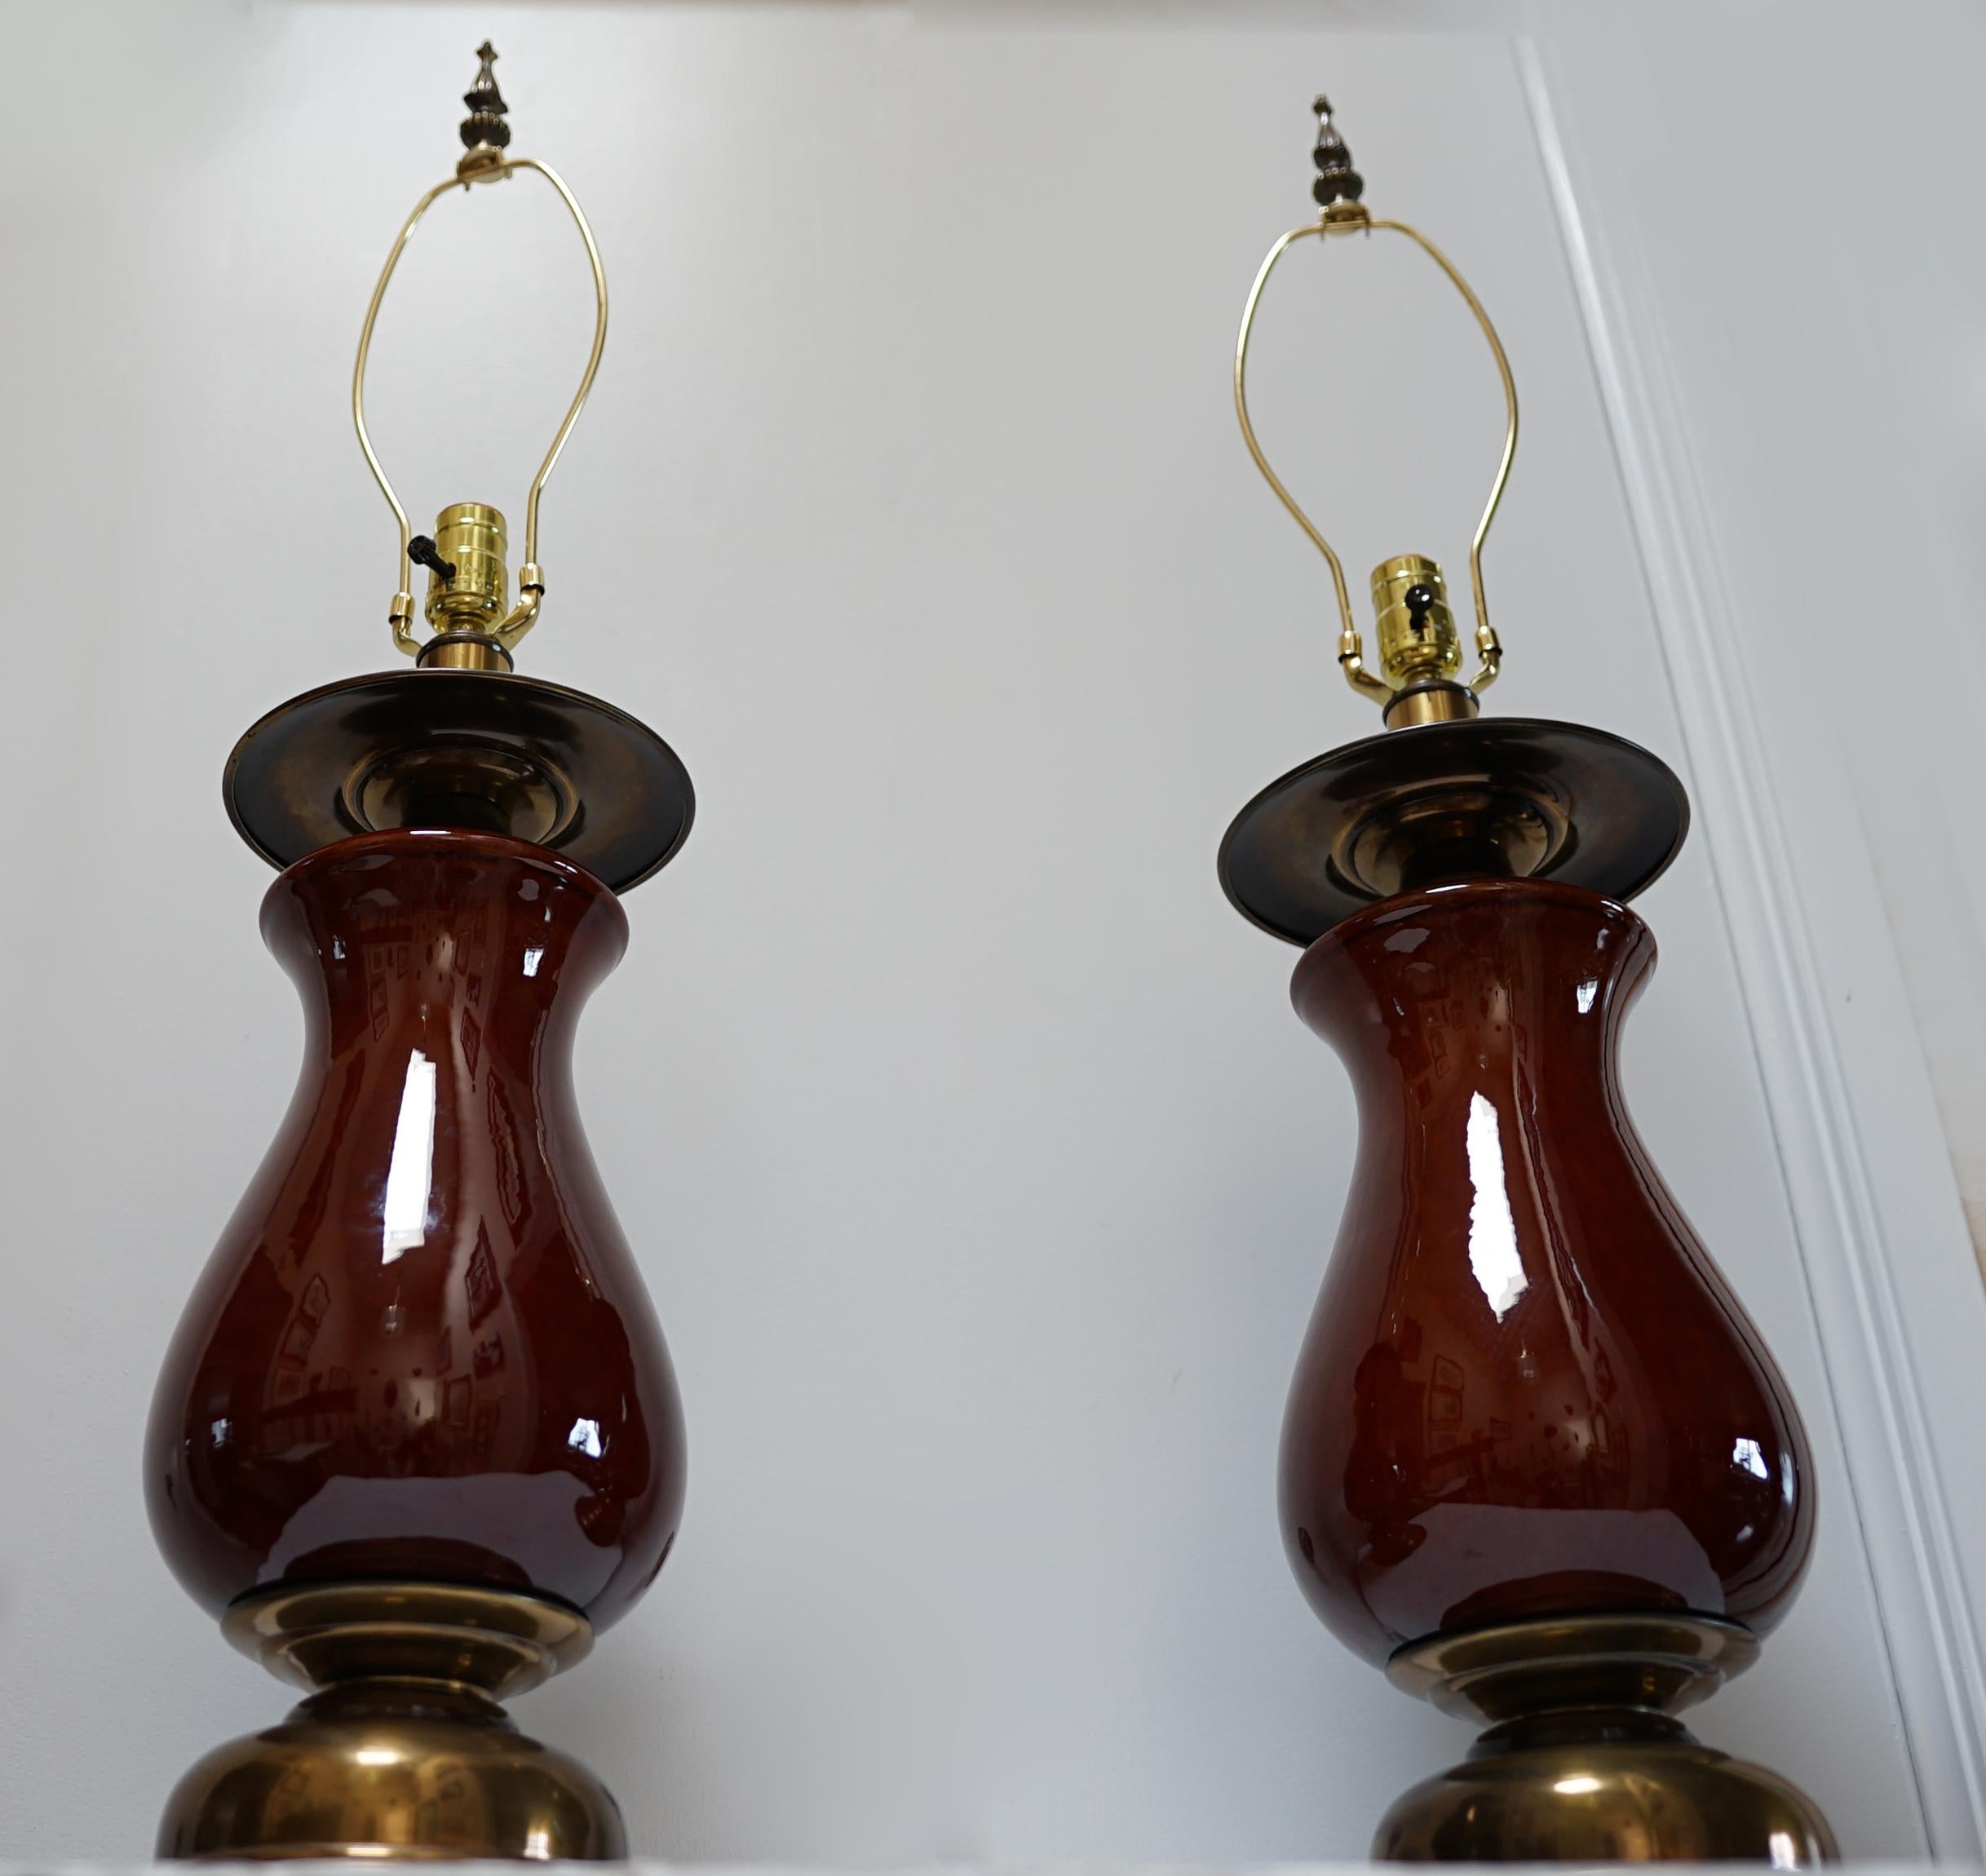 Cette paire de lampes balustres présente une gracieuse silhouette de style vase. La paire provient directement de la salle d'exposition. d'une vente aux enchères récente. Ils sont en excellent état, de la base à l'embout. La base présente un intérêt